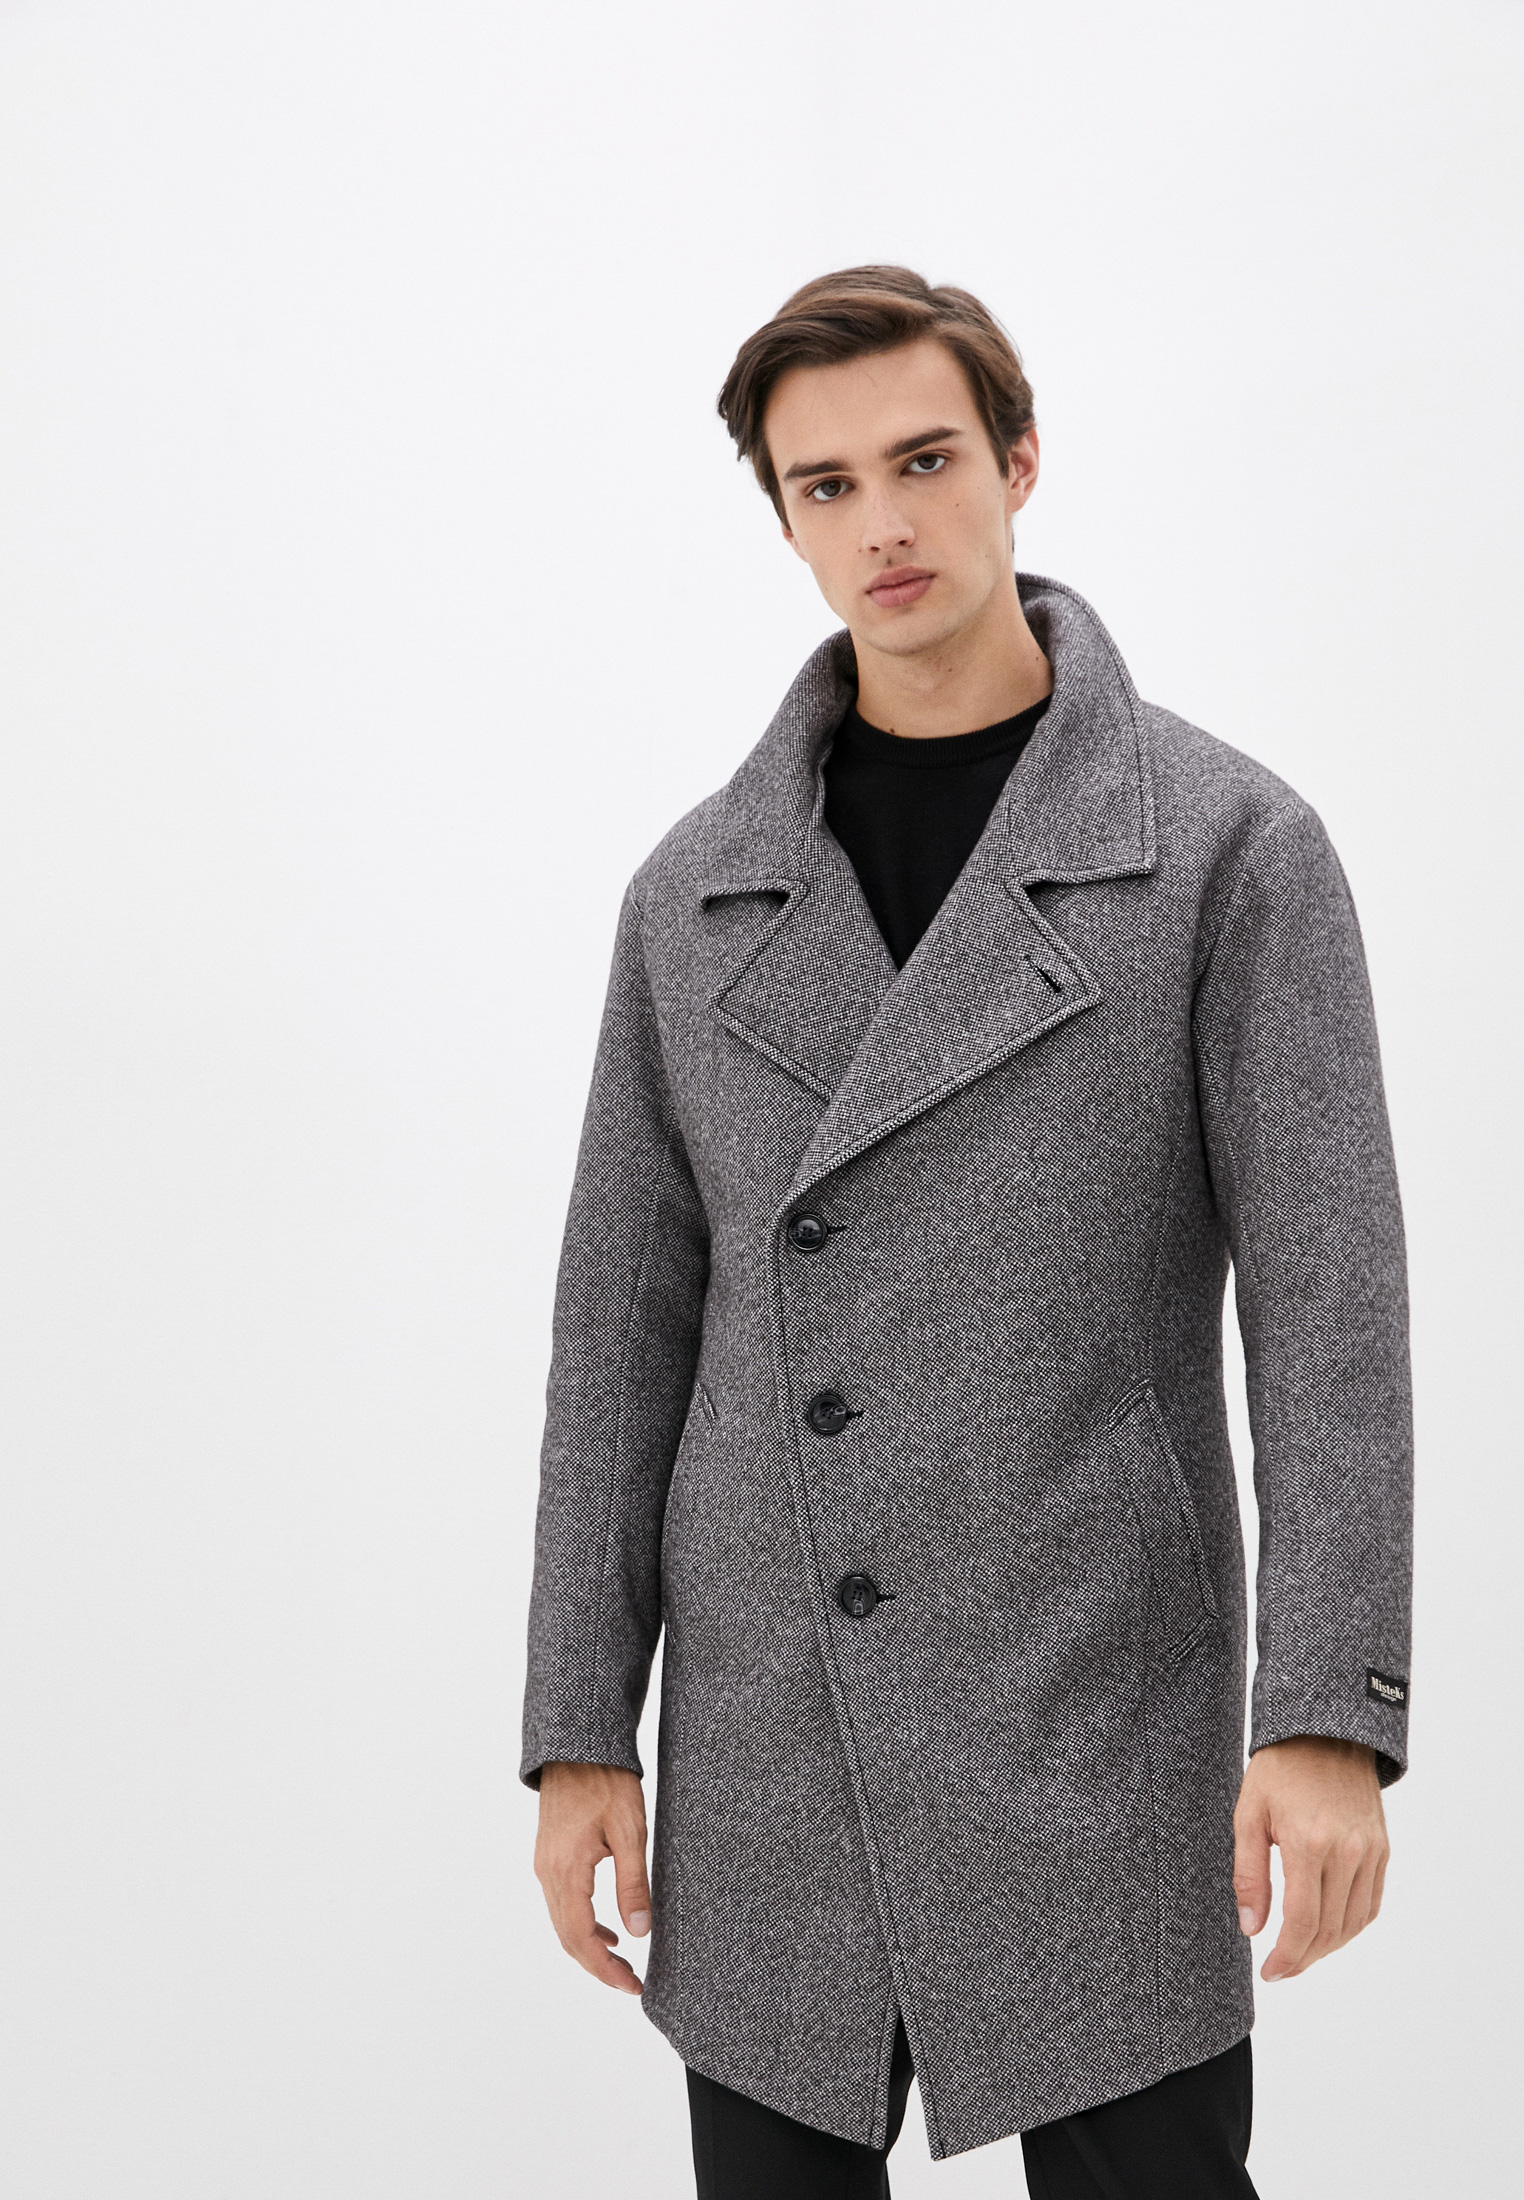 Пальто Misteks design, цвет: серый, MP002XM22E3S — купить в интернет-магазине Lamoda